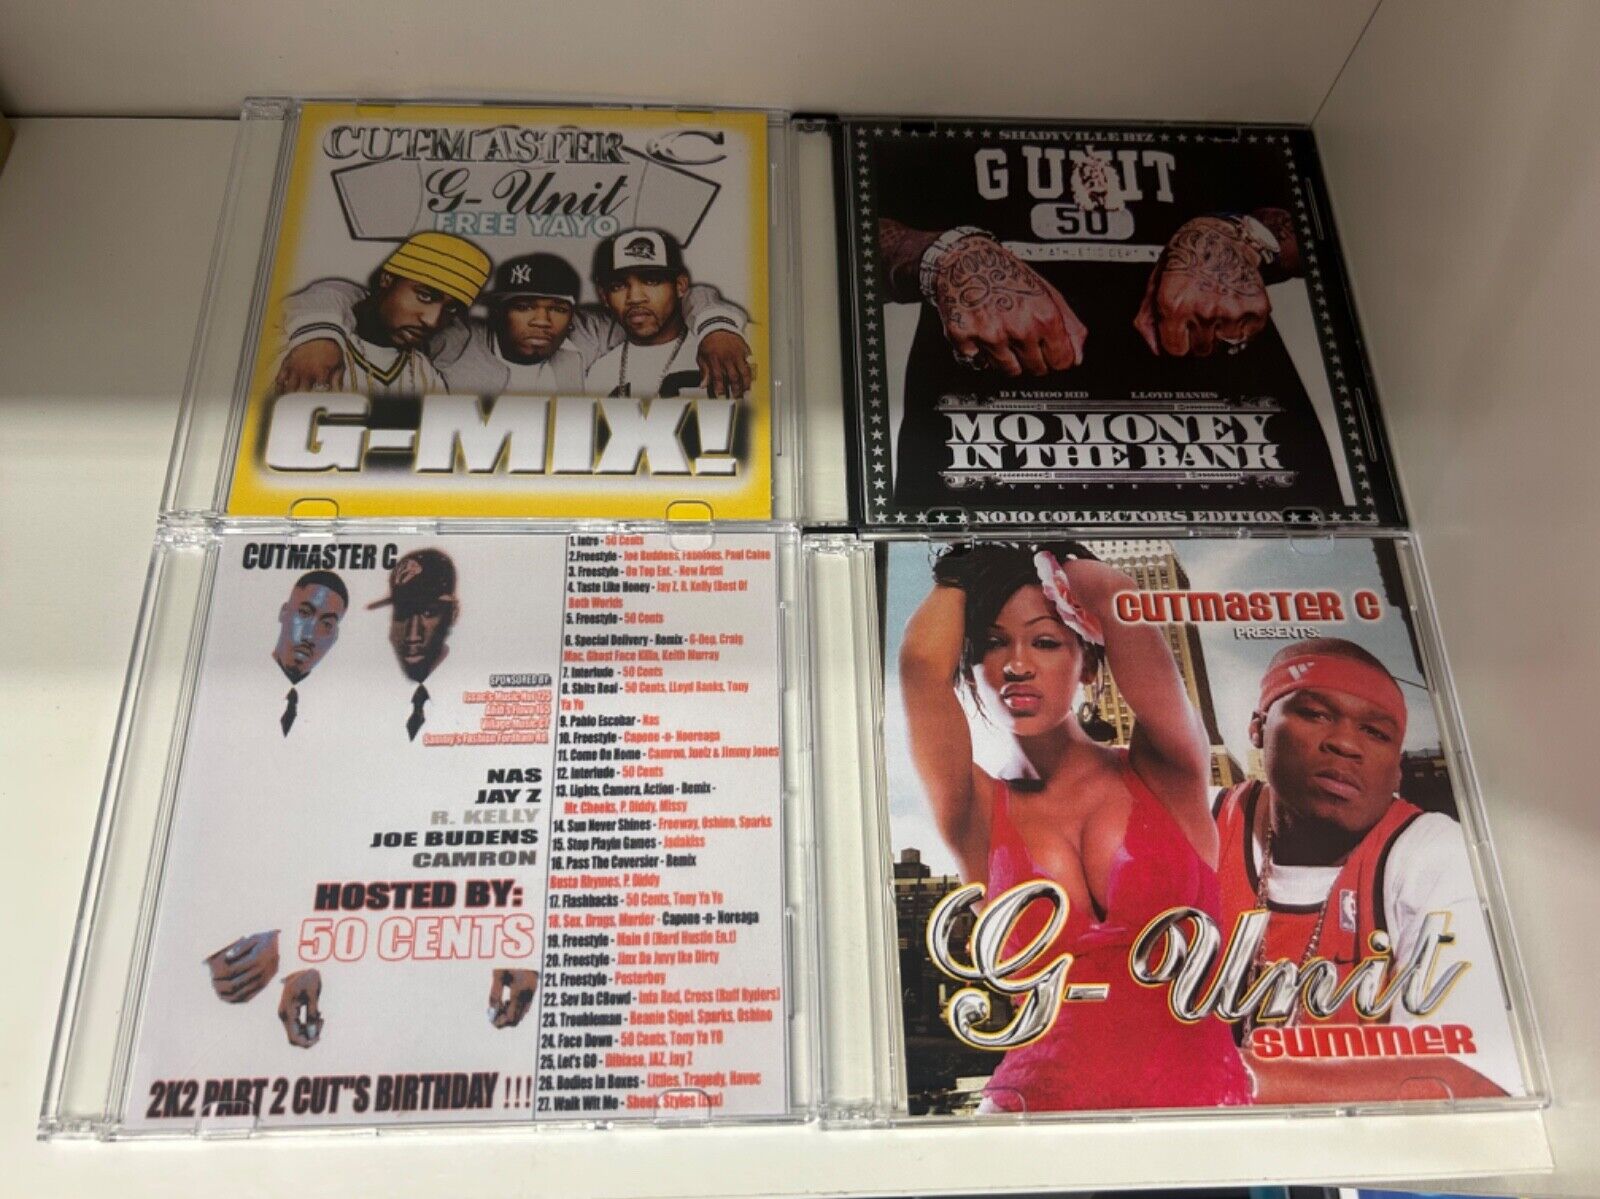 4x RARE DJ Whoo Kid Cutmaster C G-Unit 50 Cent Mixtape Mix CD Lot